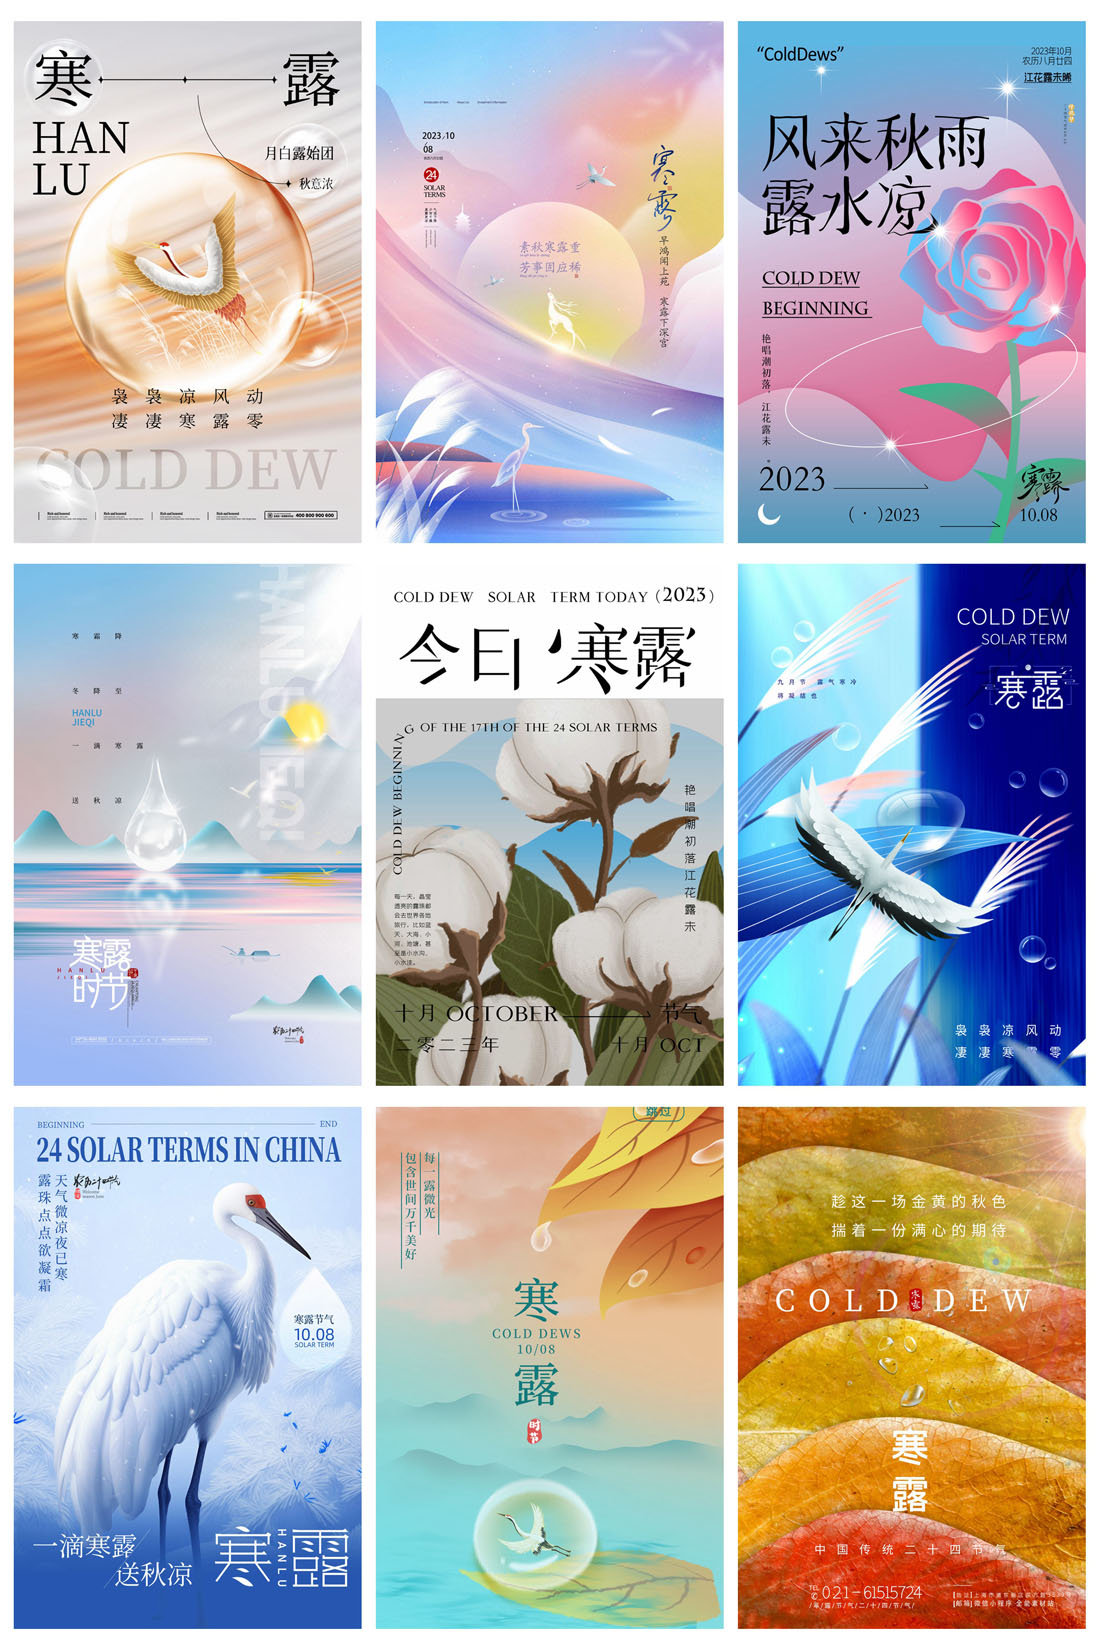 94款中国传统二十四节气之寒露节日海报PSD模板 设计素材 第16张